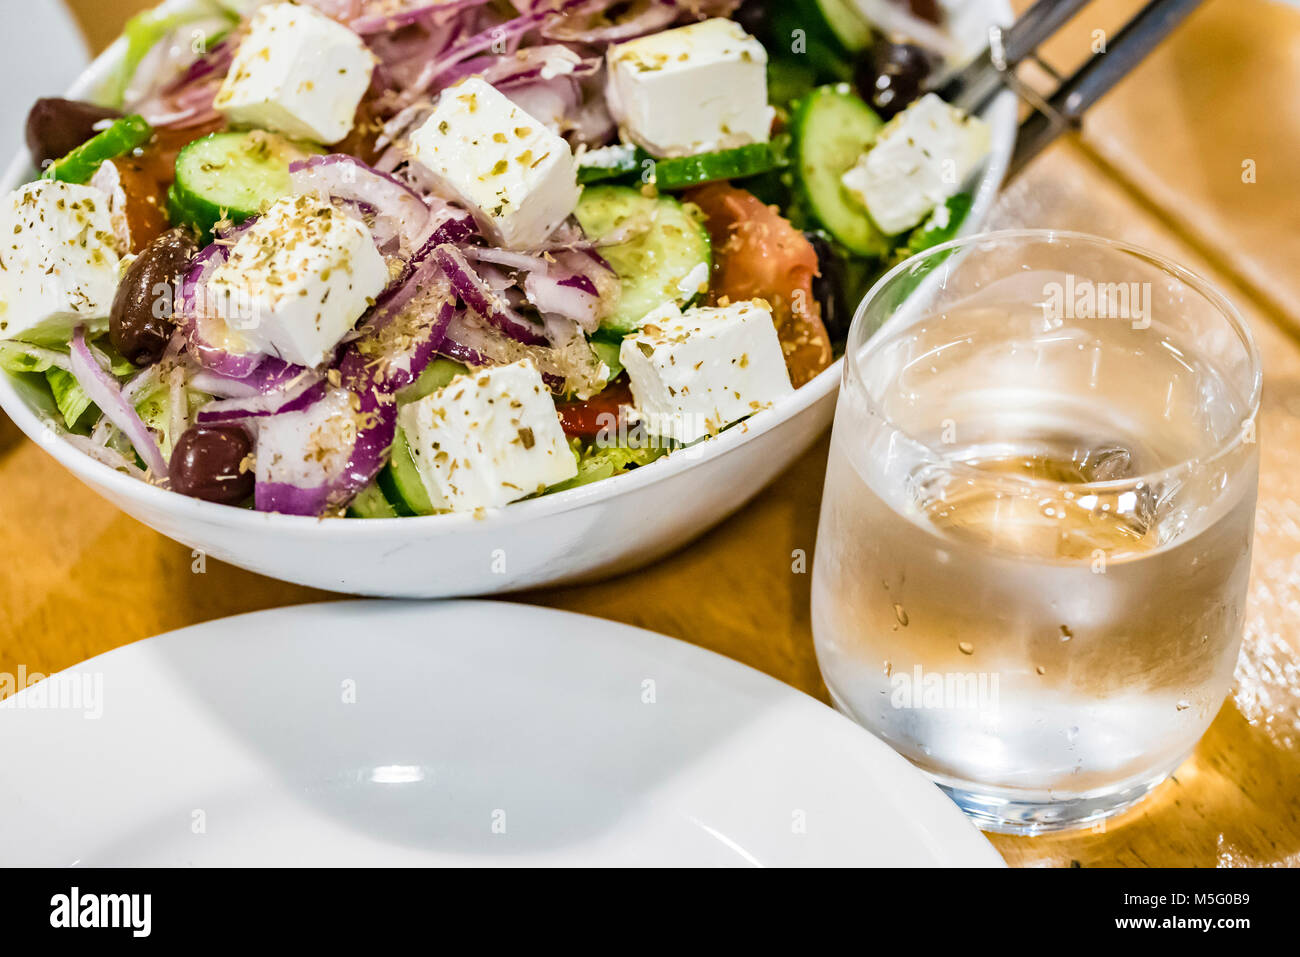 Frischer Salat, Teller, Glas Wasser auf dem Tisch, Nahaufnahme. Griechischer  Salat mit Feta Käse, gesundes Essen Konzept Stockfotografie - Alamy